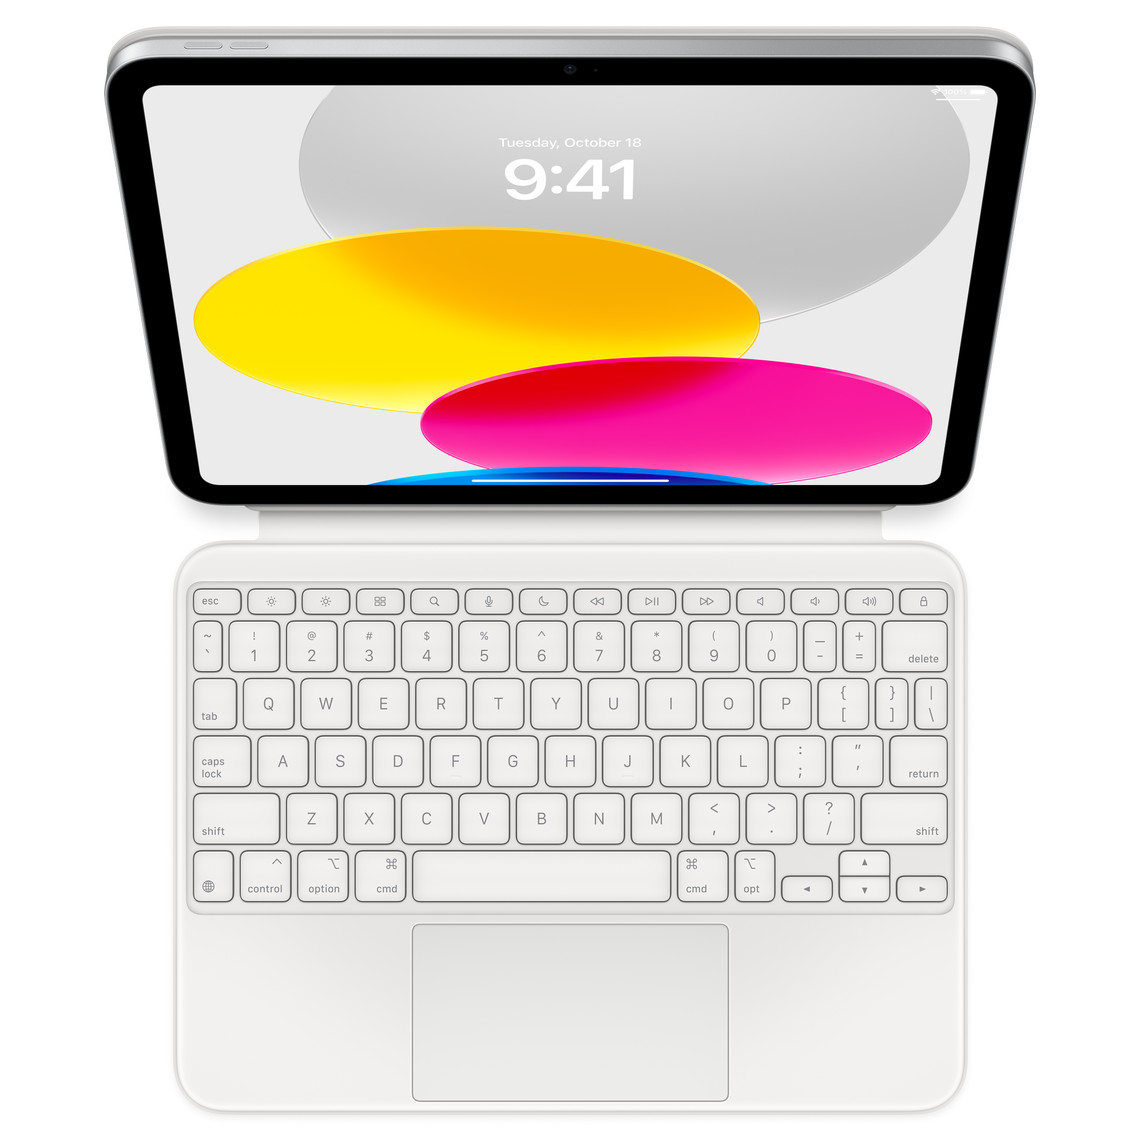 Az iPad és a hozzá csatlakozó, kinyitva lefektetett Magic Keyboard Folio felülnézete. A kijelzőn színes, körkörös alakzatok látszanak.